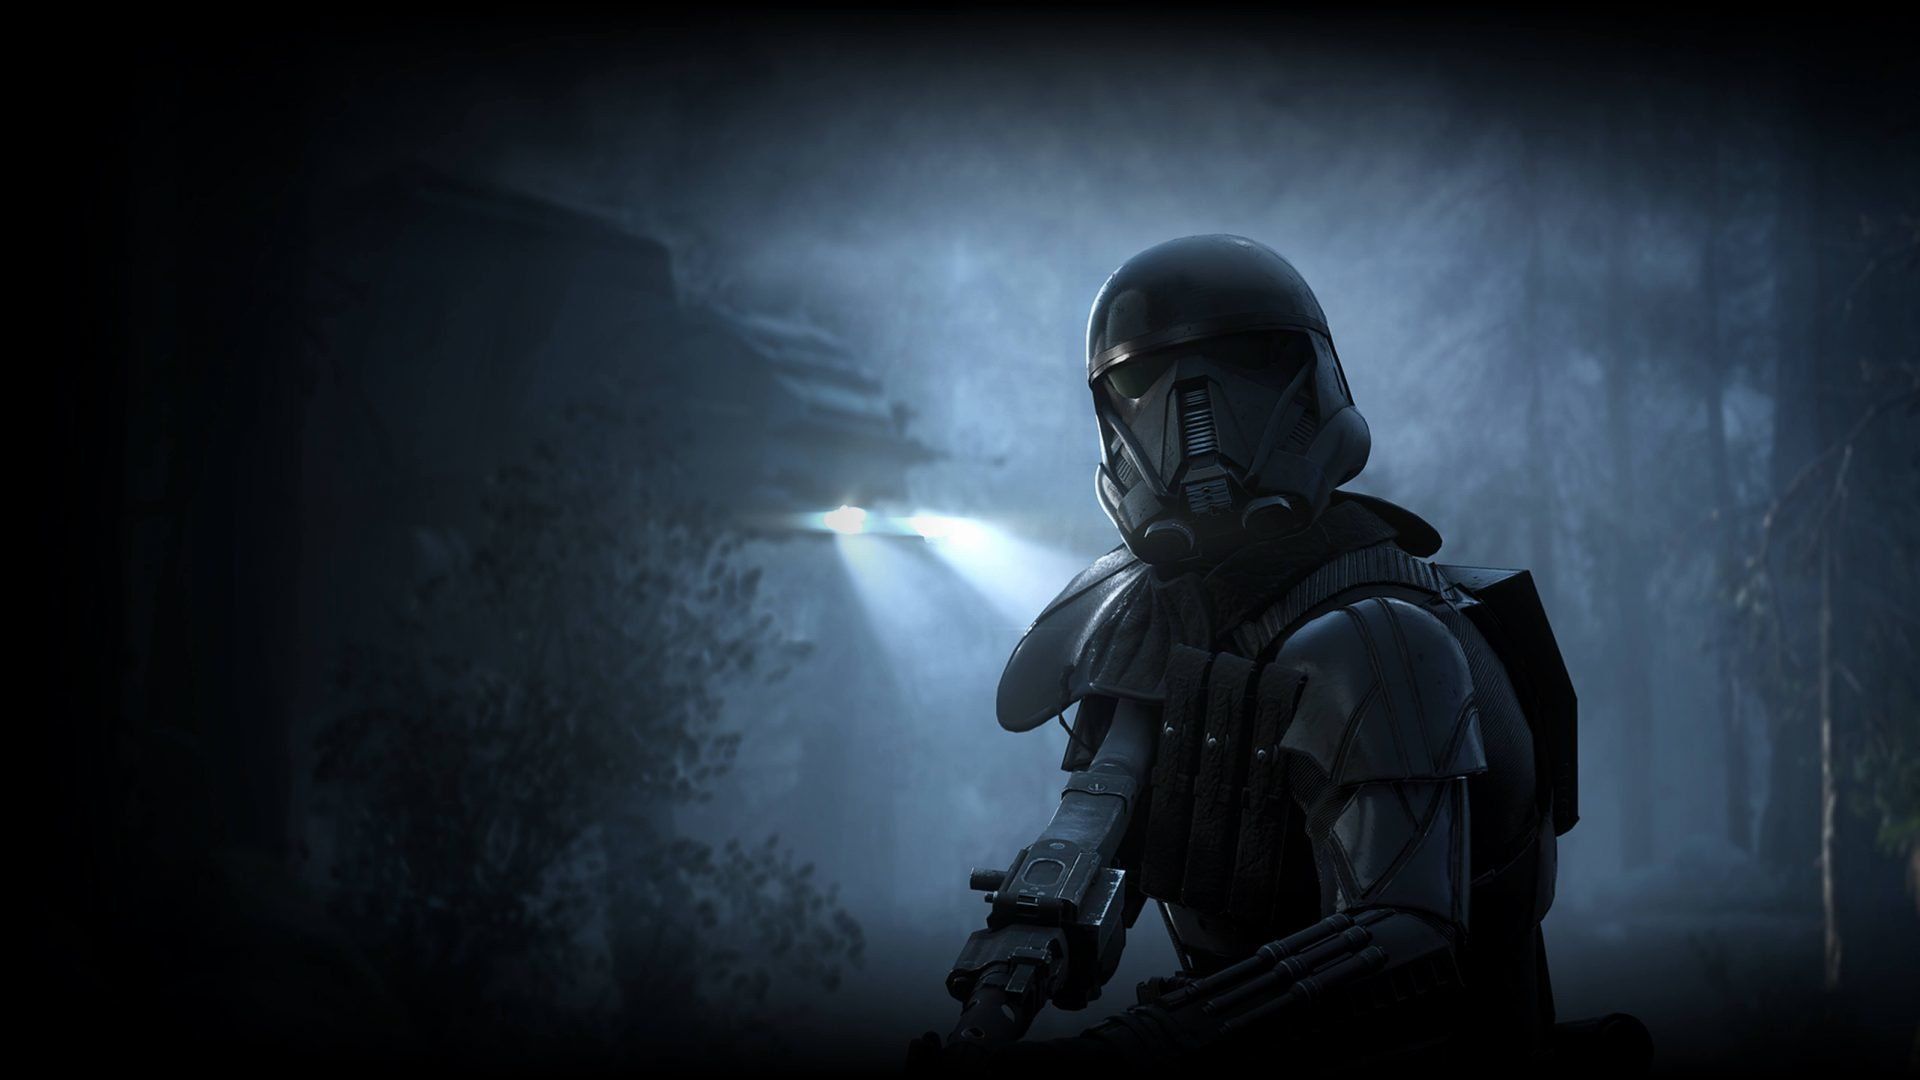 Death Trooper Battlefront 2 .wallpapertip.com